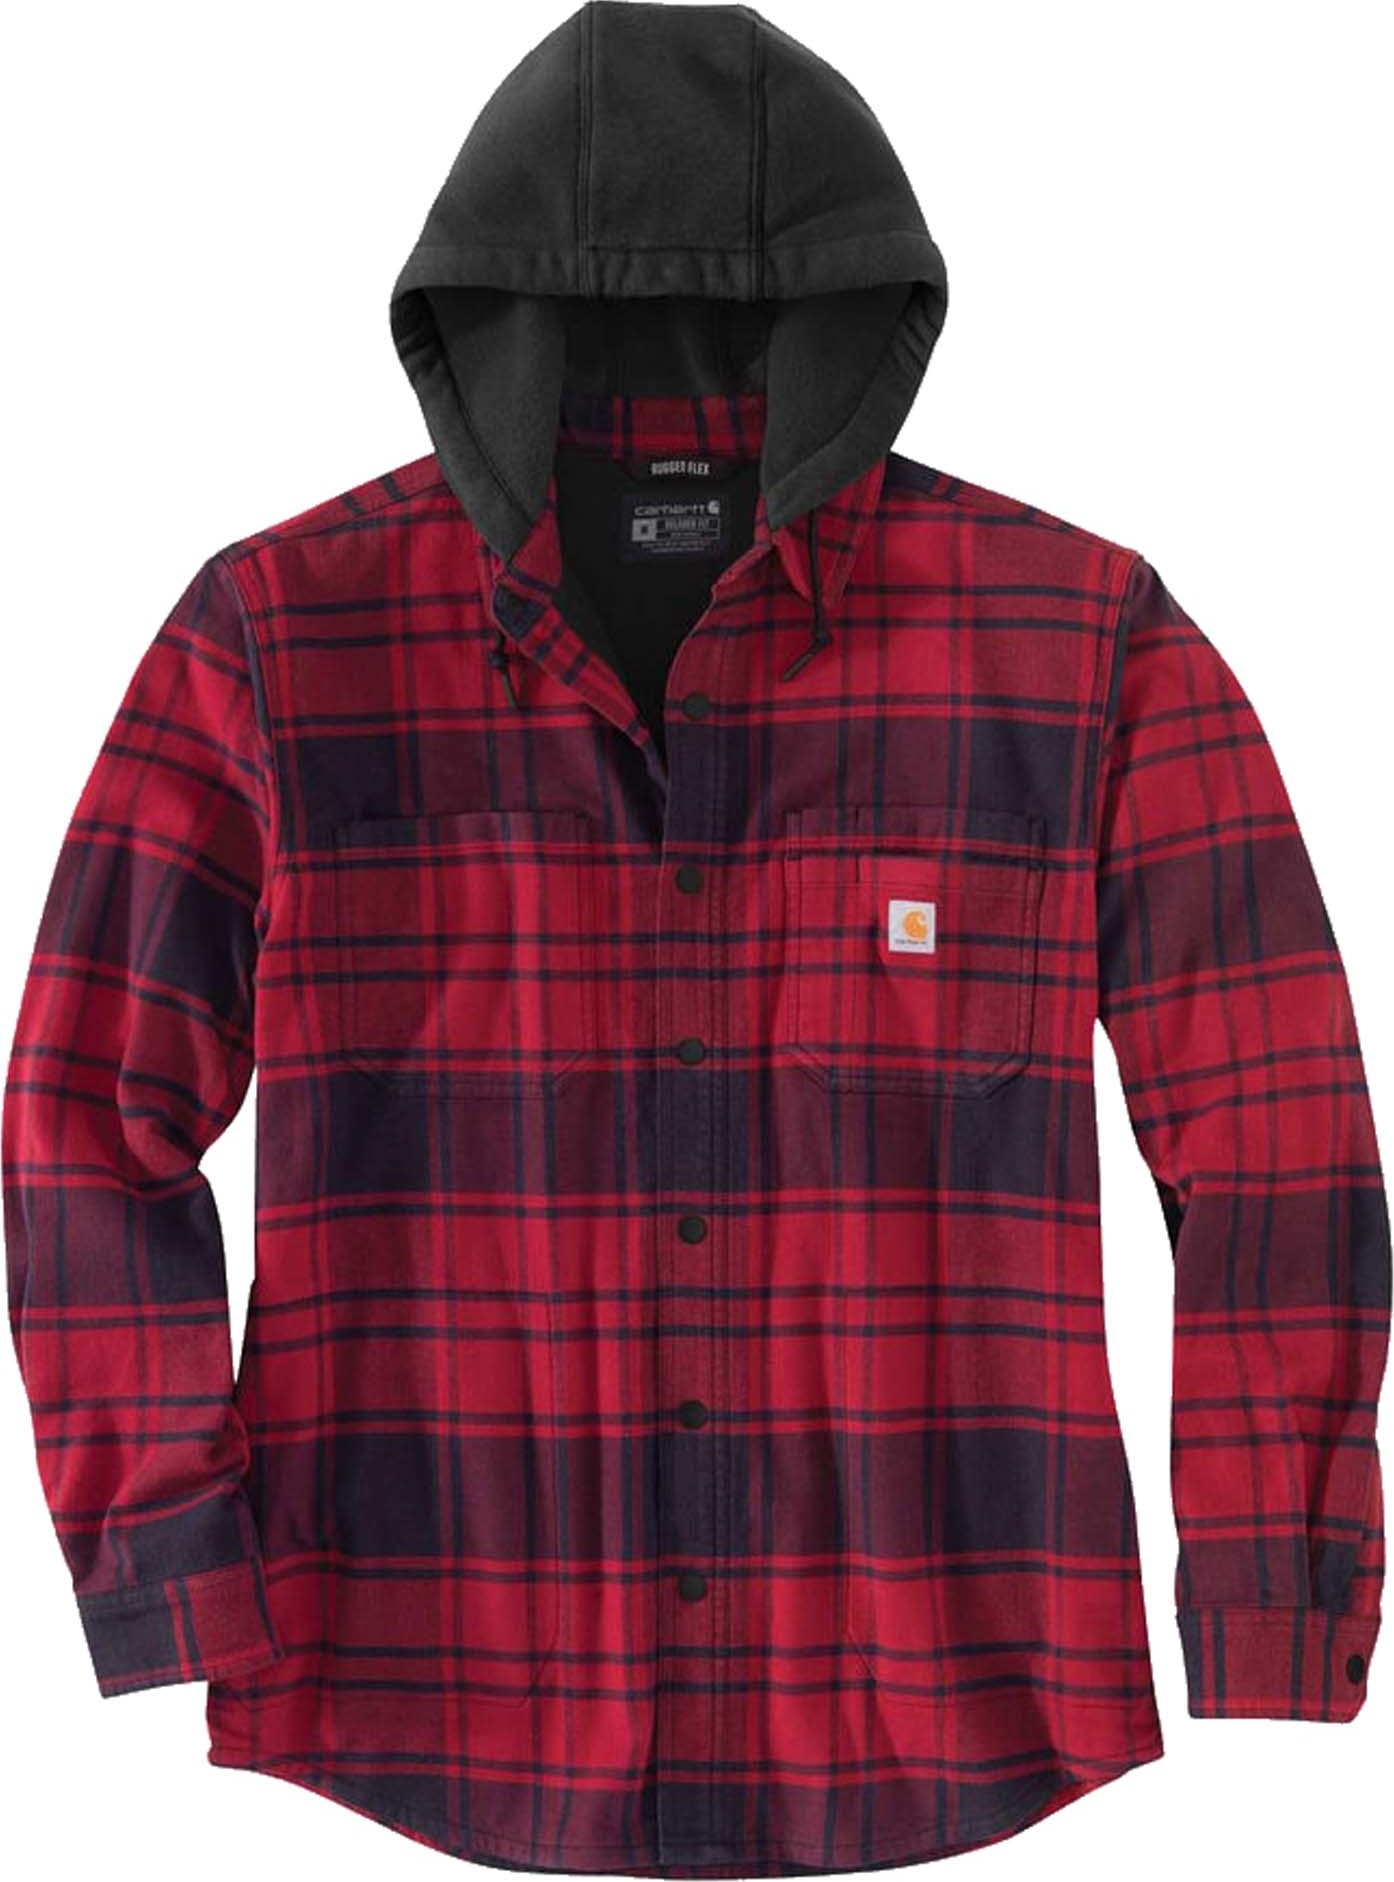 Carhartt Men's Flannel Fleece Lined Hooded Shirt Jacket OXBLOOD L, OXBLOOD